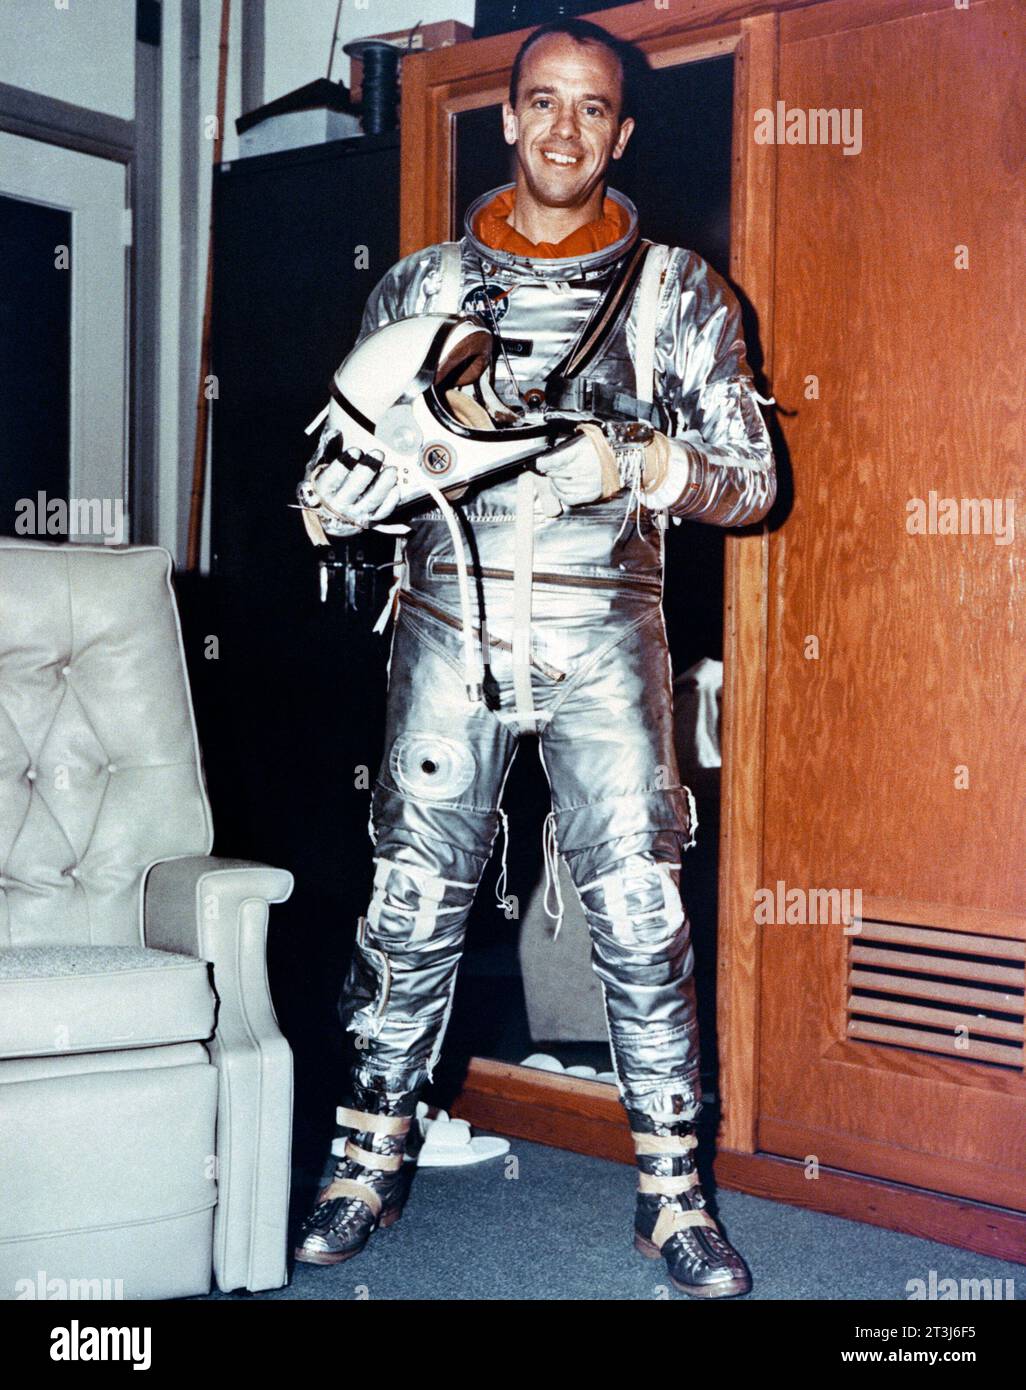 Astronaut Alan B. Shepard Jr. Astronaut Alan B. Shepard Jr. in seinem Mercury Pressure Suit, bevor er mit einem Mercury-Redstone-3-Raumschiff von Cape Canaveral auf einer suborbitalen Mission starten konnte. Diese Mission war die erste menschliche Raumfahrt der USA. Bildnummer: s63-02082 Datum: 5. Mai 1961 Stockfoto